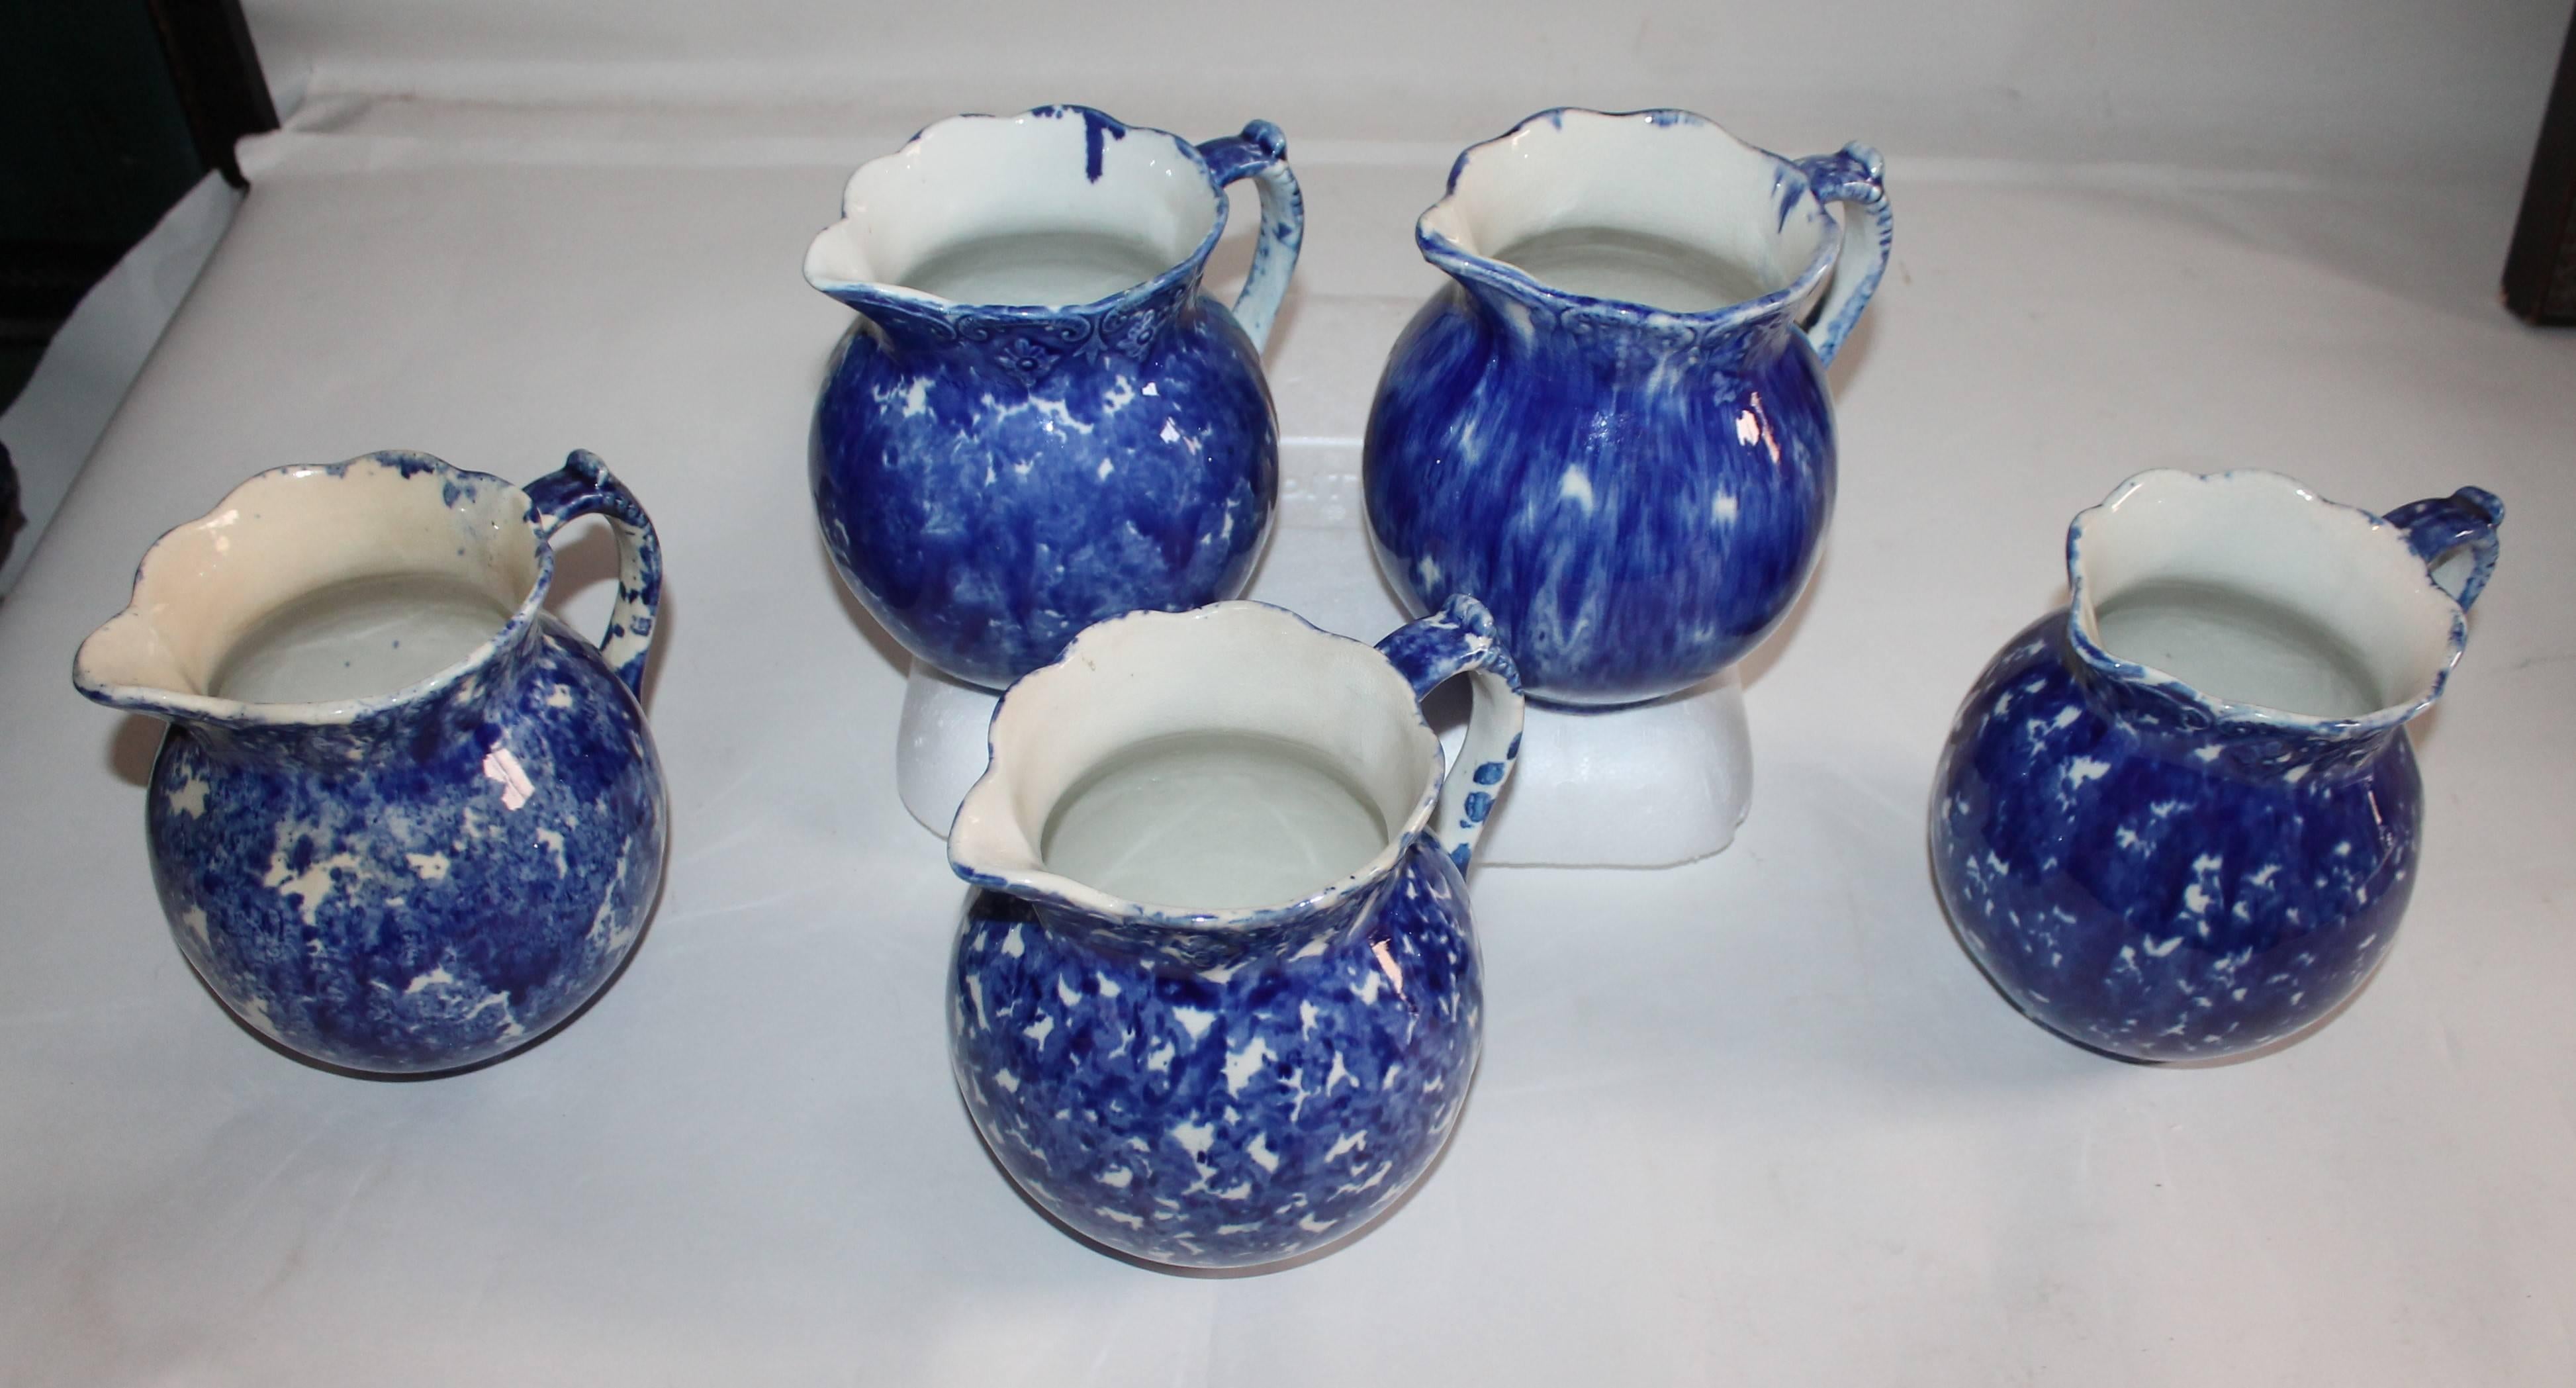 Sammlung von fünf Keramikkrügen aus Schwammware in tadellosem Zustand. Die Farben sind alle leicht unterschiedlich und die Form ist die gleiche.